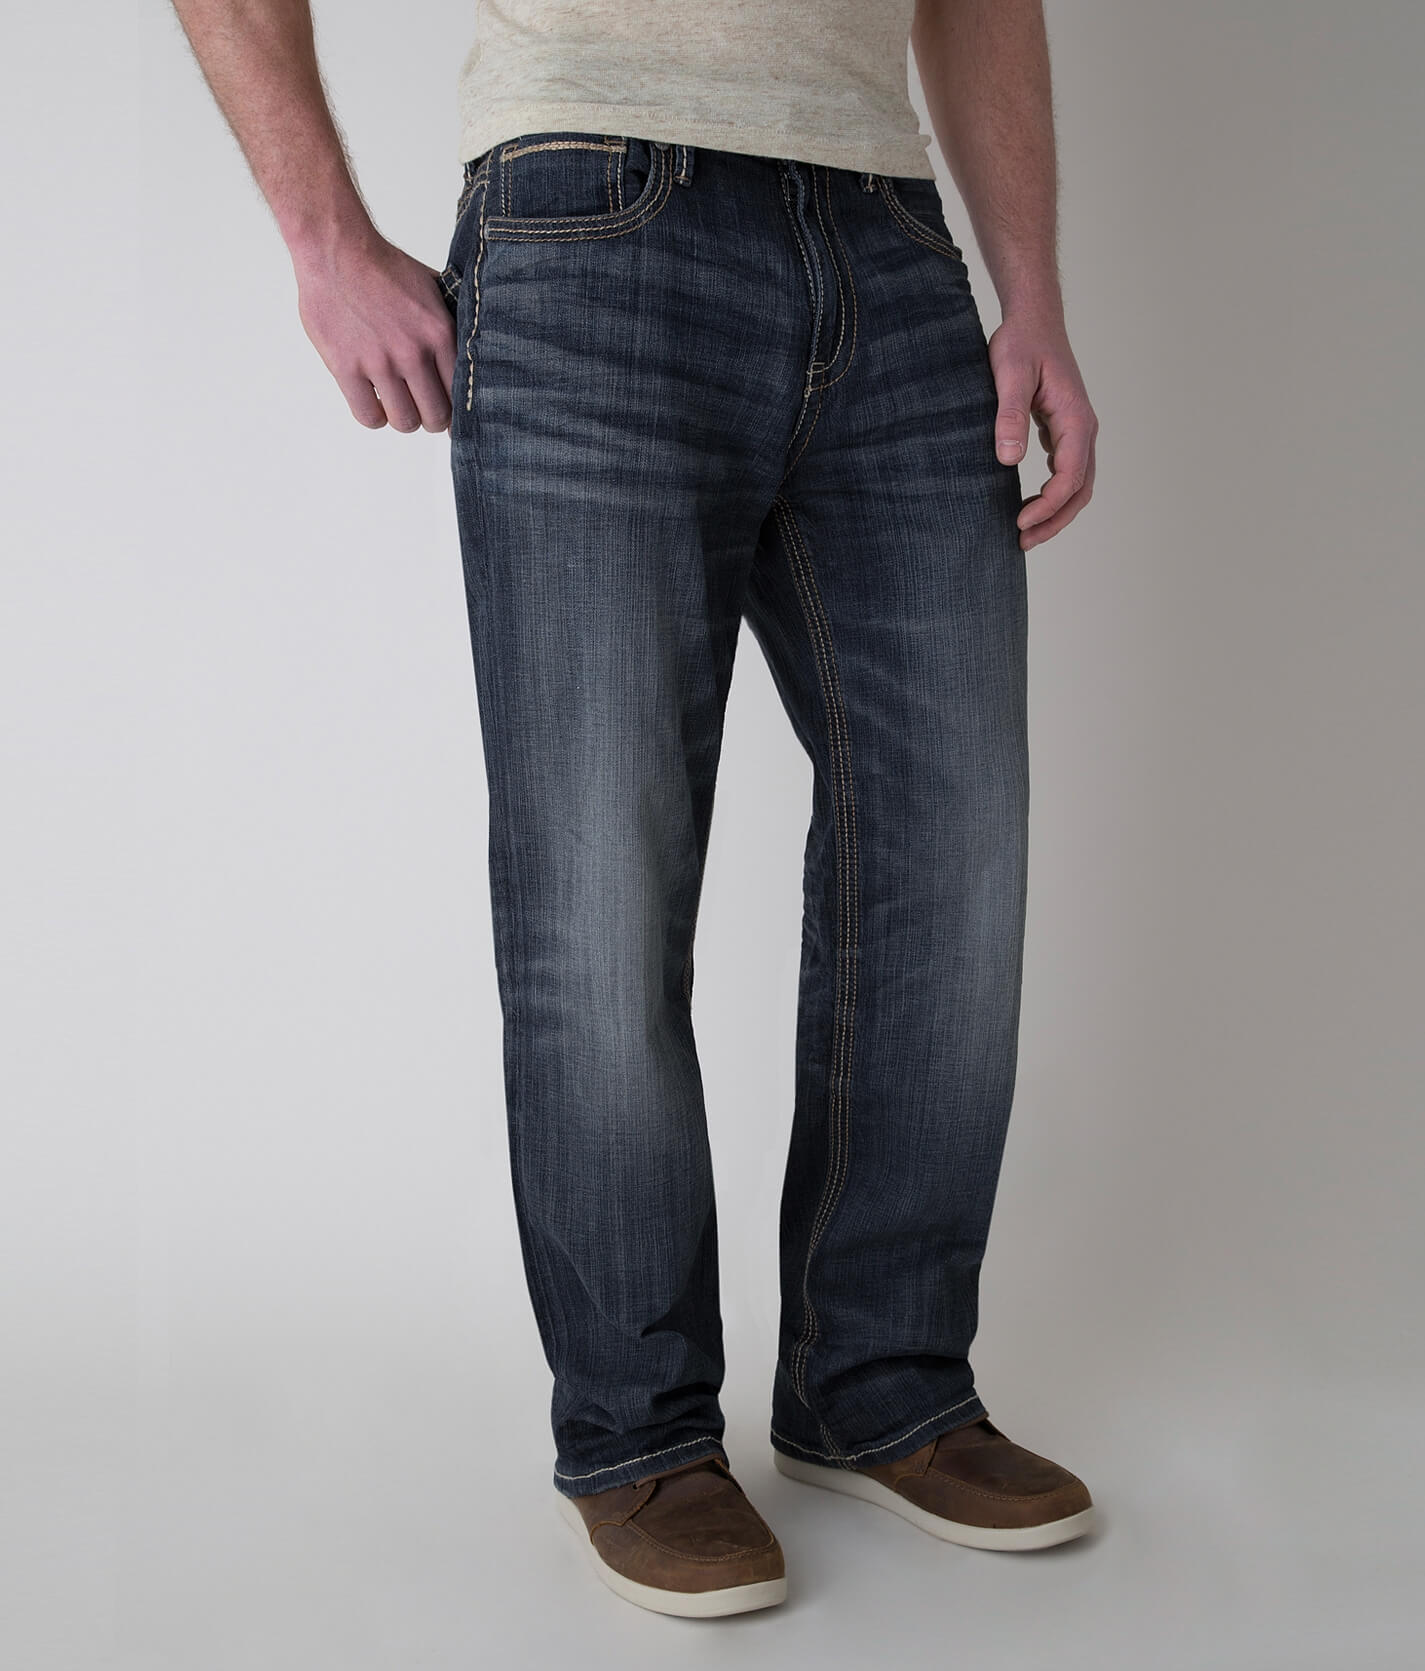 amiri jeans fake